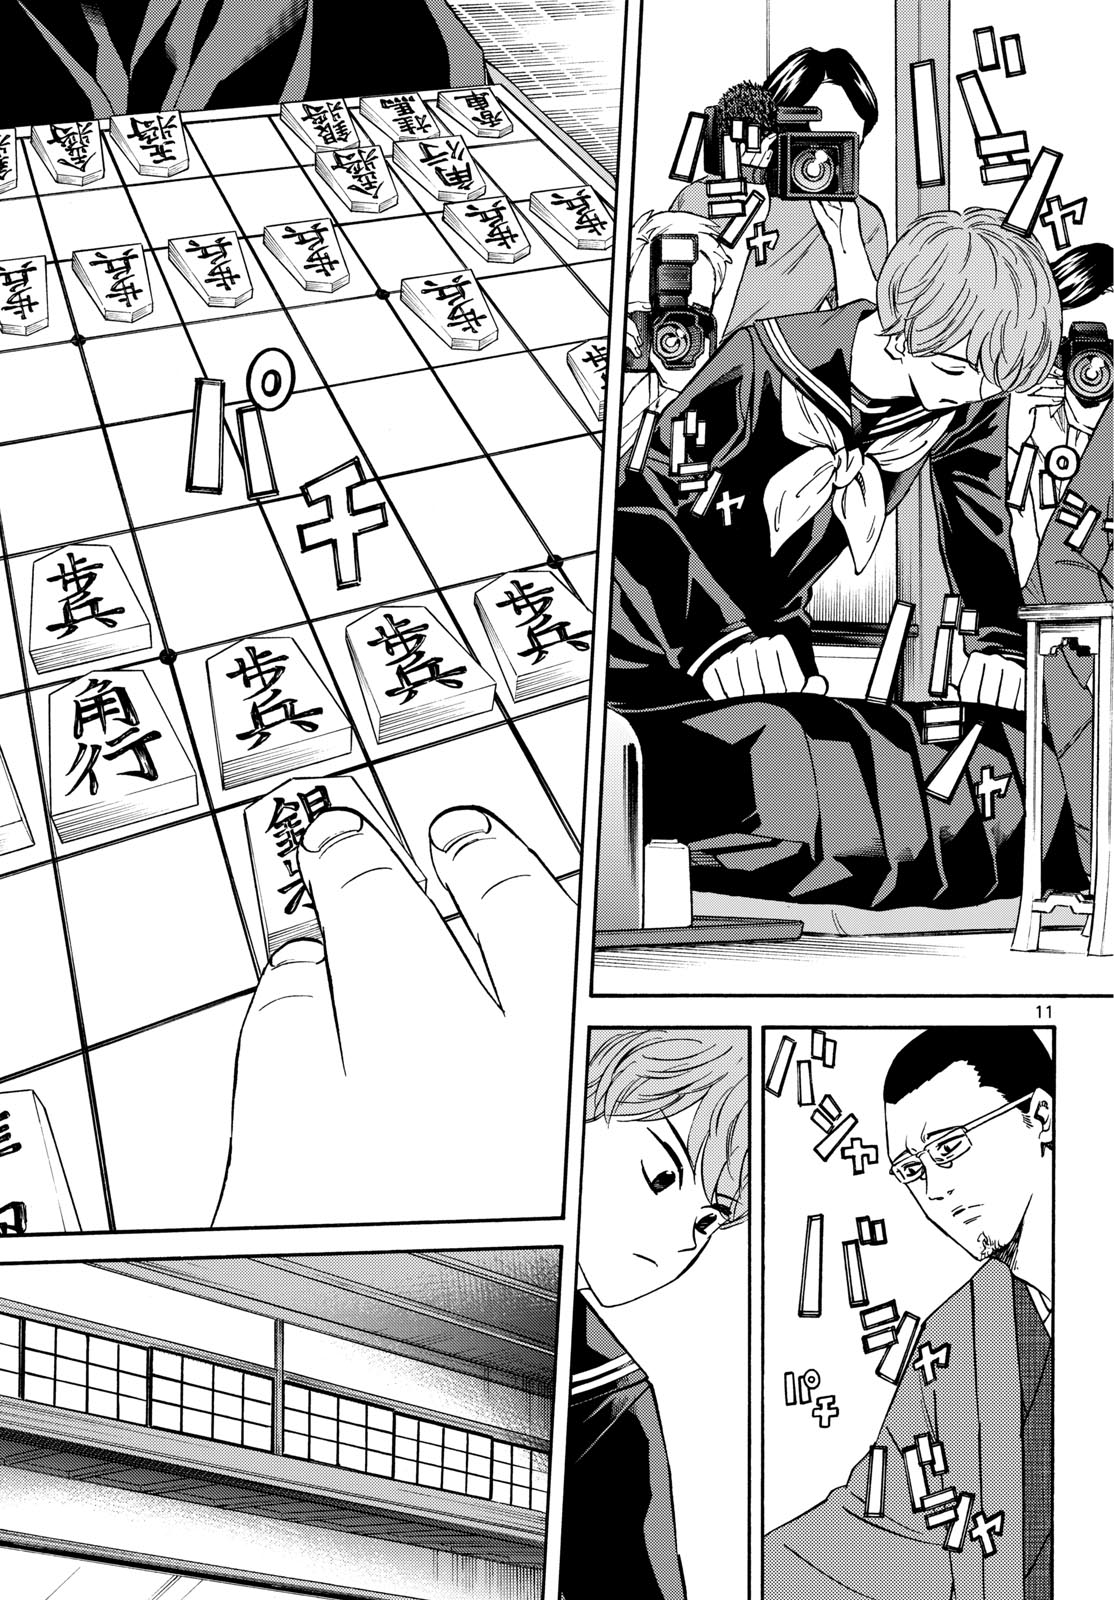 Tatsu to Ichigo - Chapter 175 - Page 11